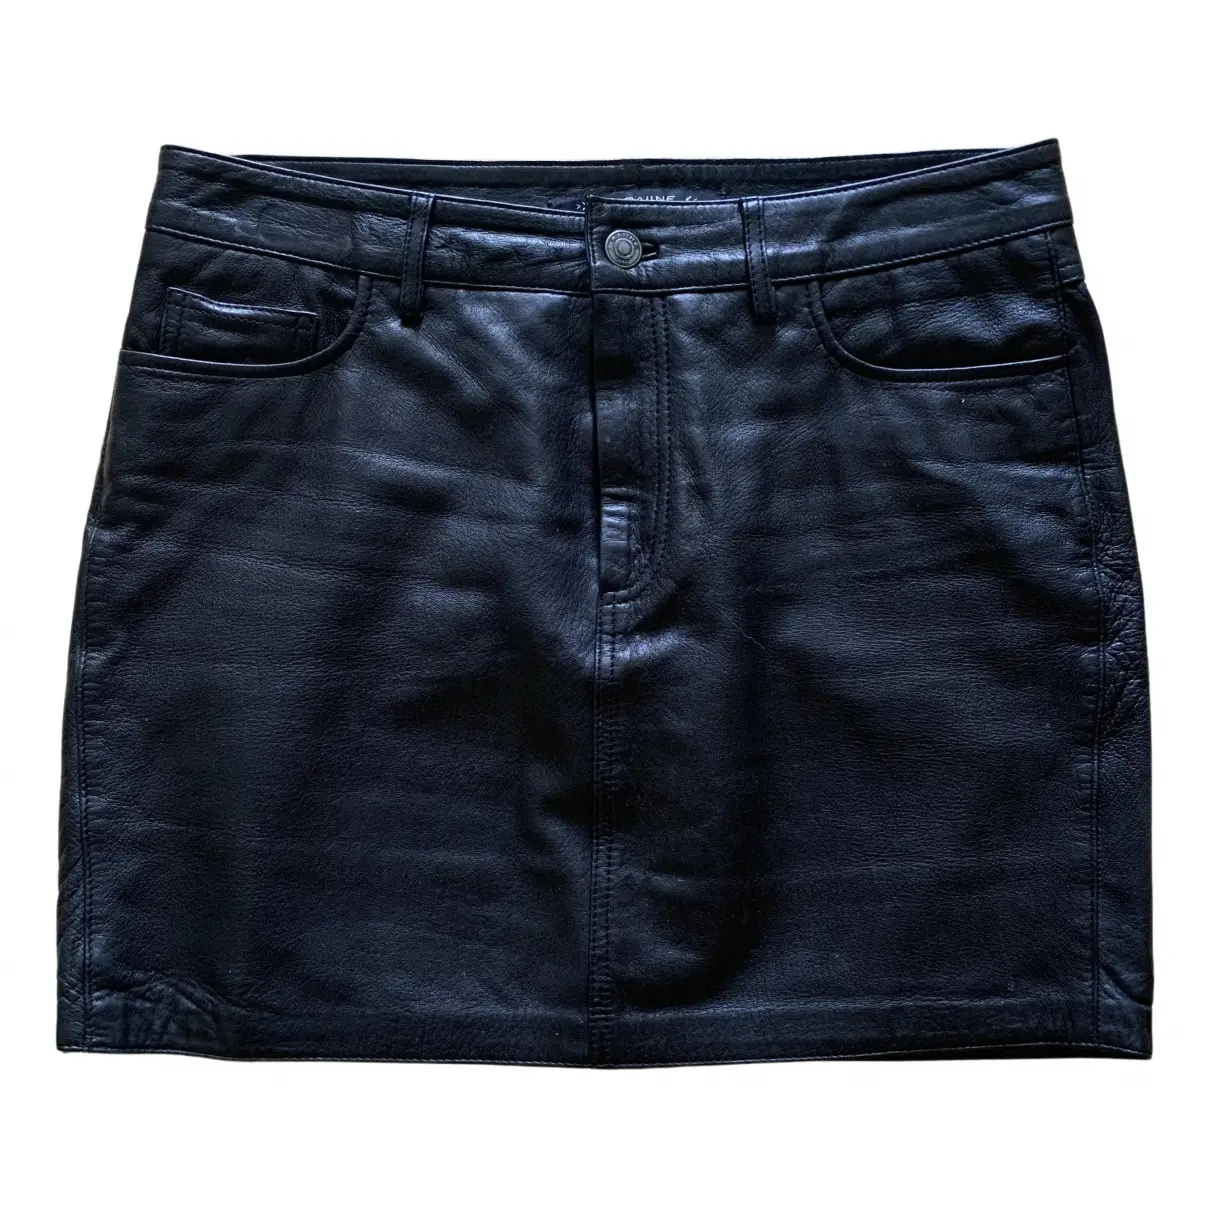 Leather mini skirt Raiine